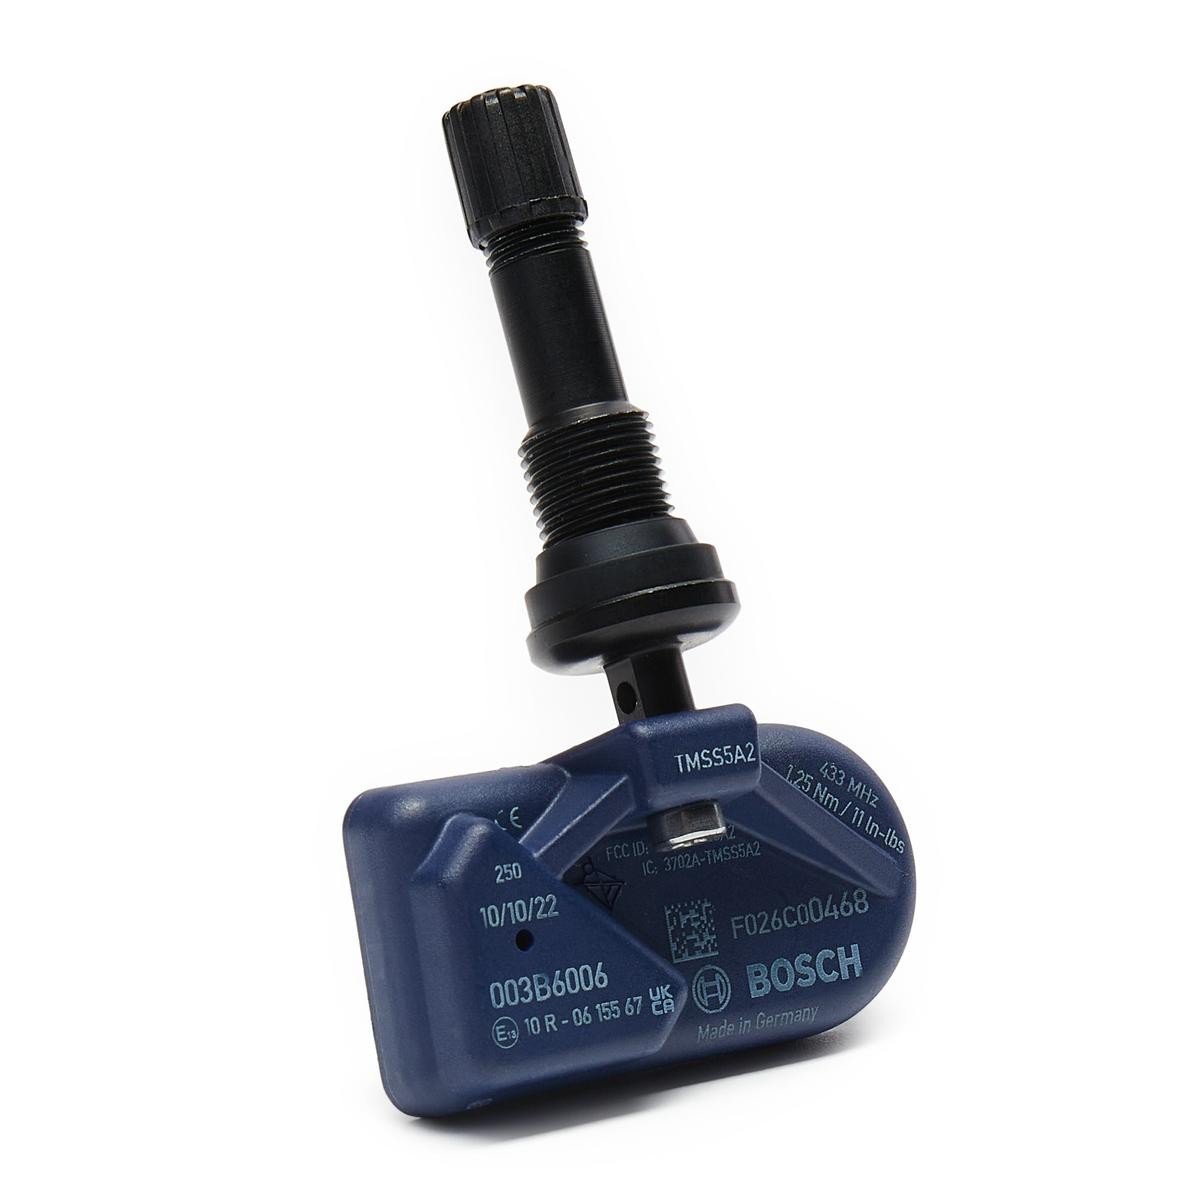 Renault KADJAR Sensors, relays, control units parts - Tyre pressure sensor (TPMS) BOSCH F 026 C00 468